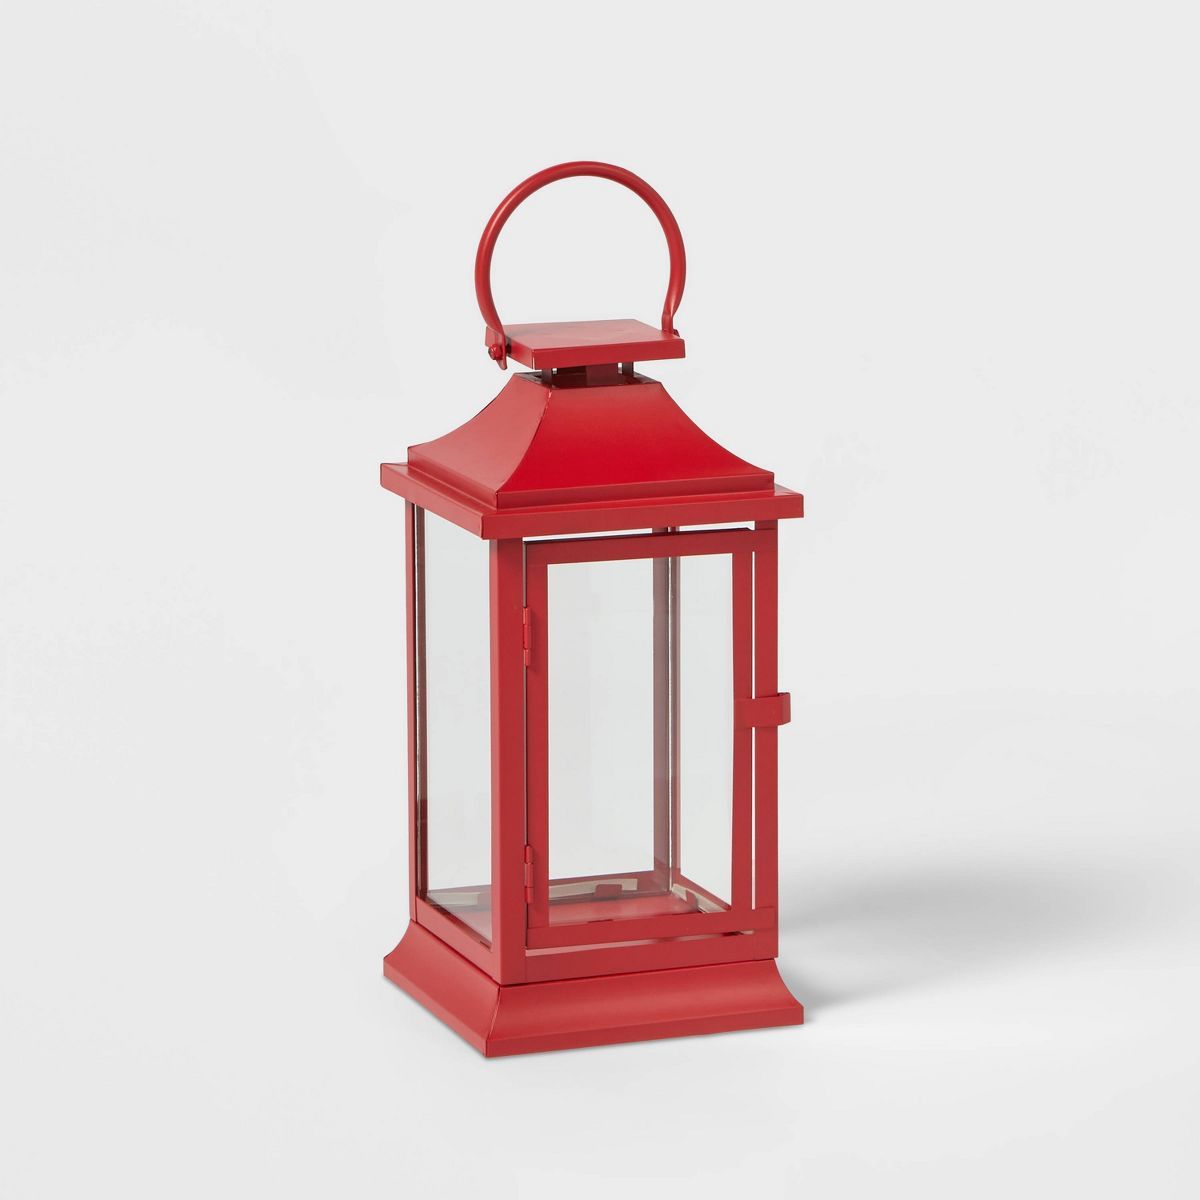 12" Decorative Metal Christmas Lantern Red - Wondershop™ | Target